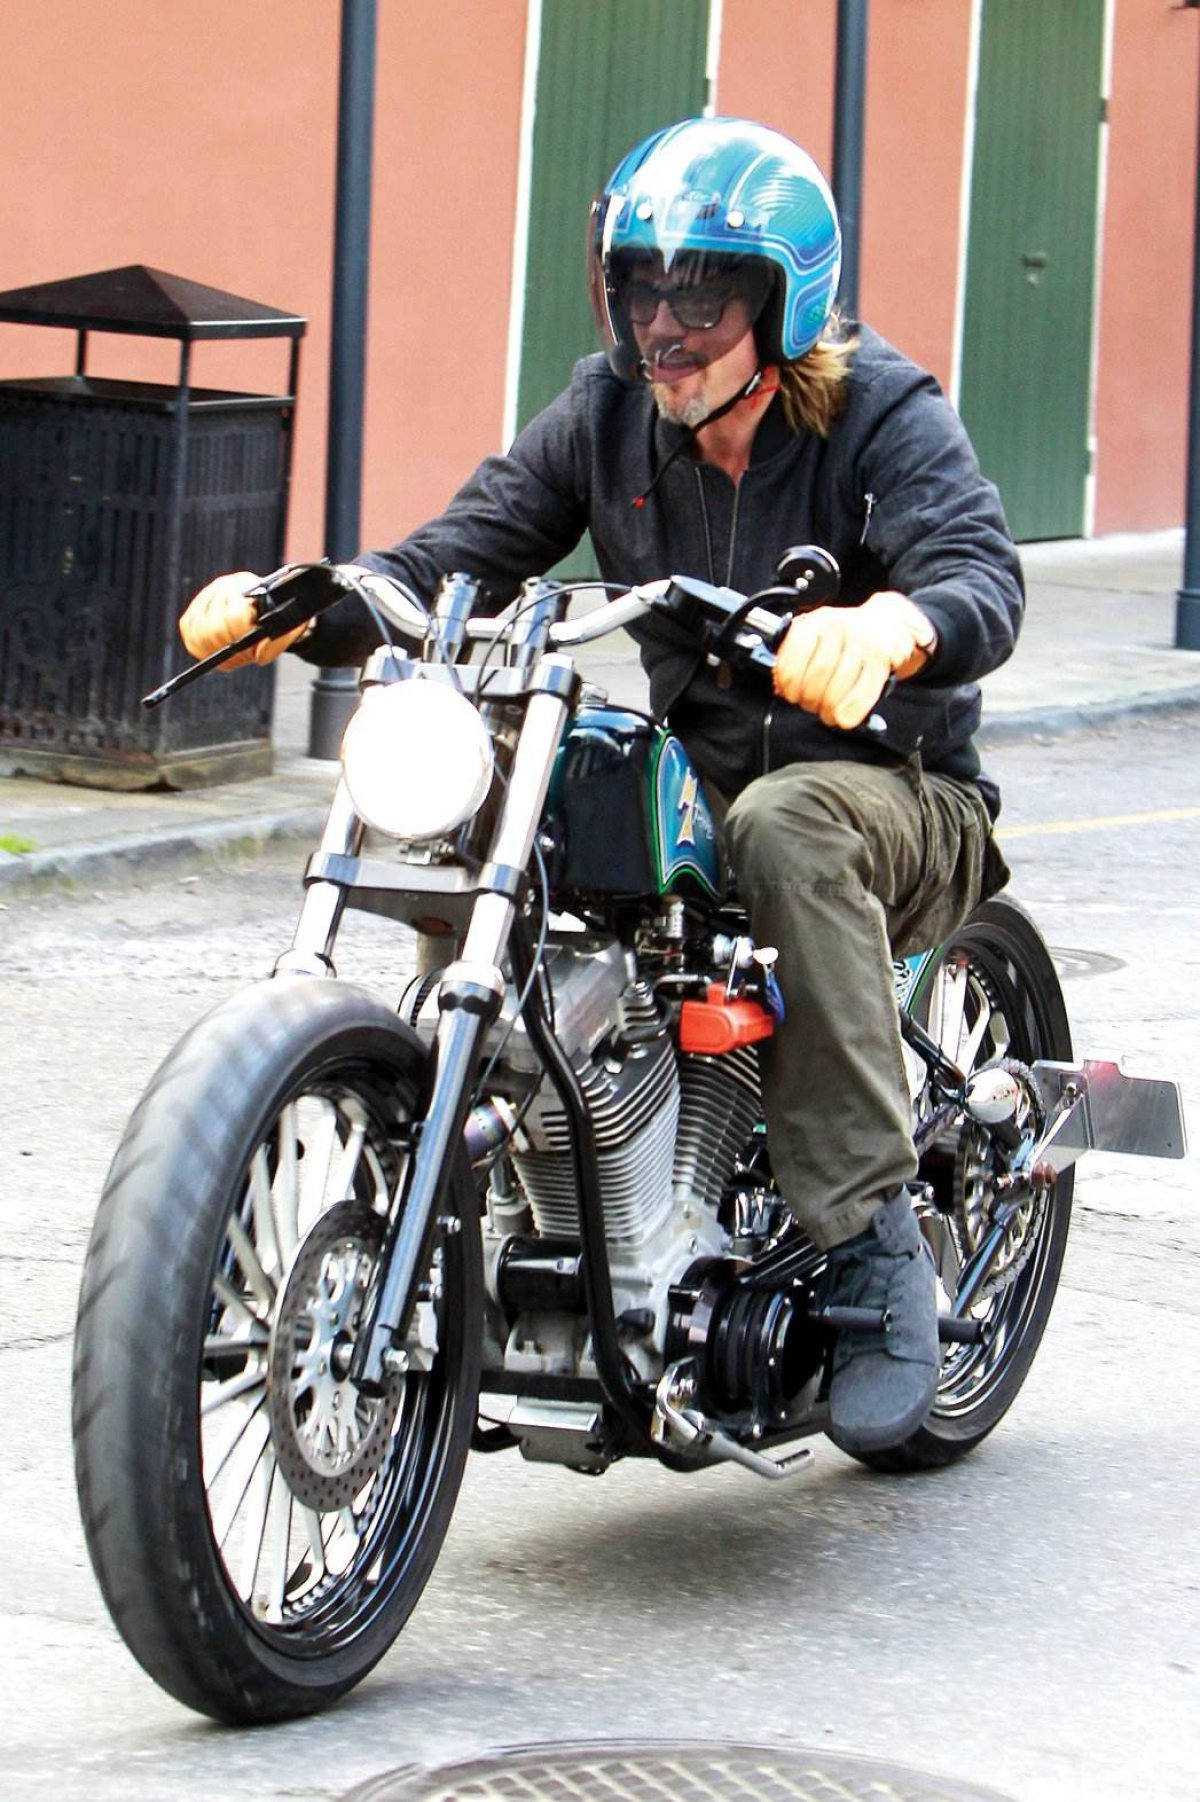 Brad Pitt colecciona motos, tiene unas 15!